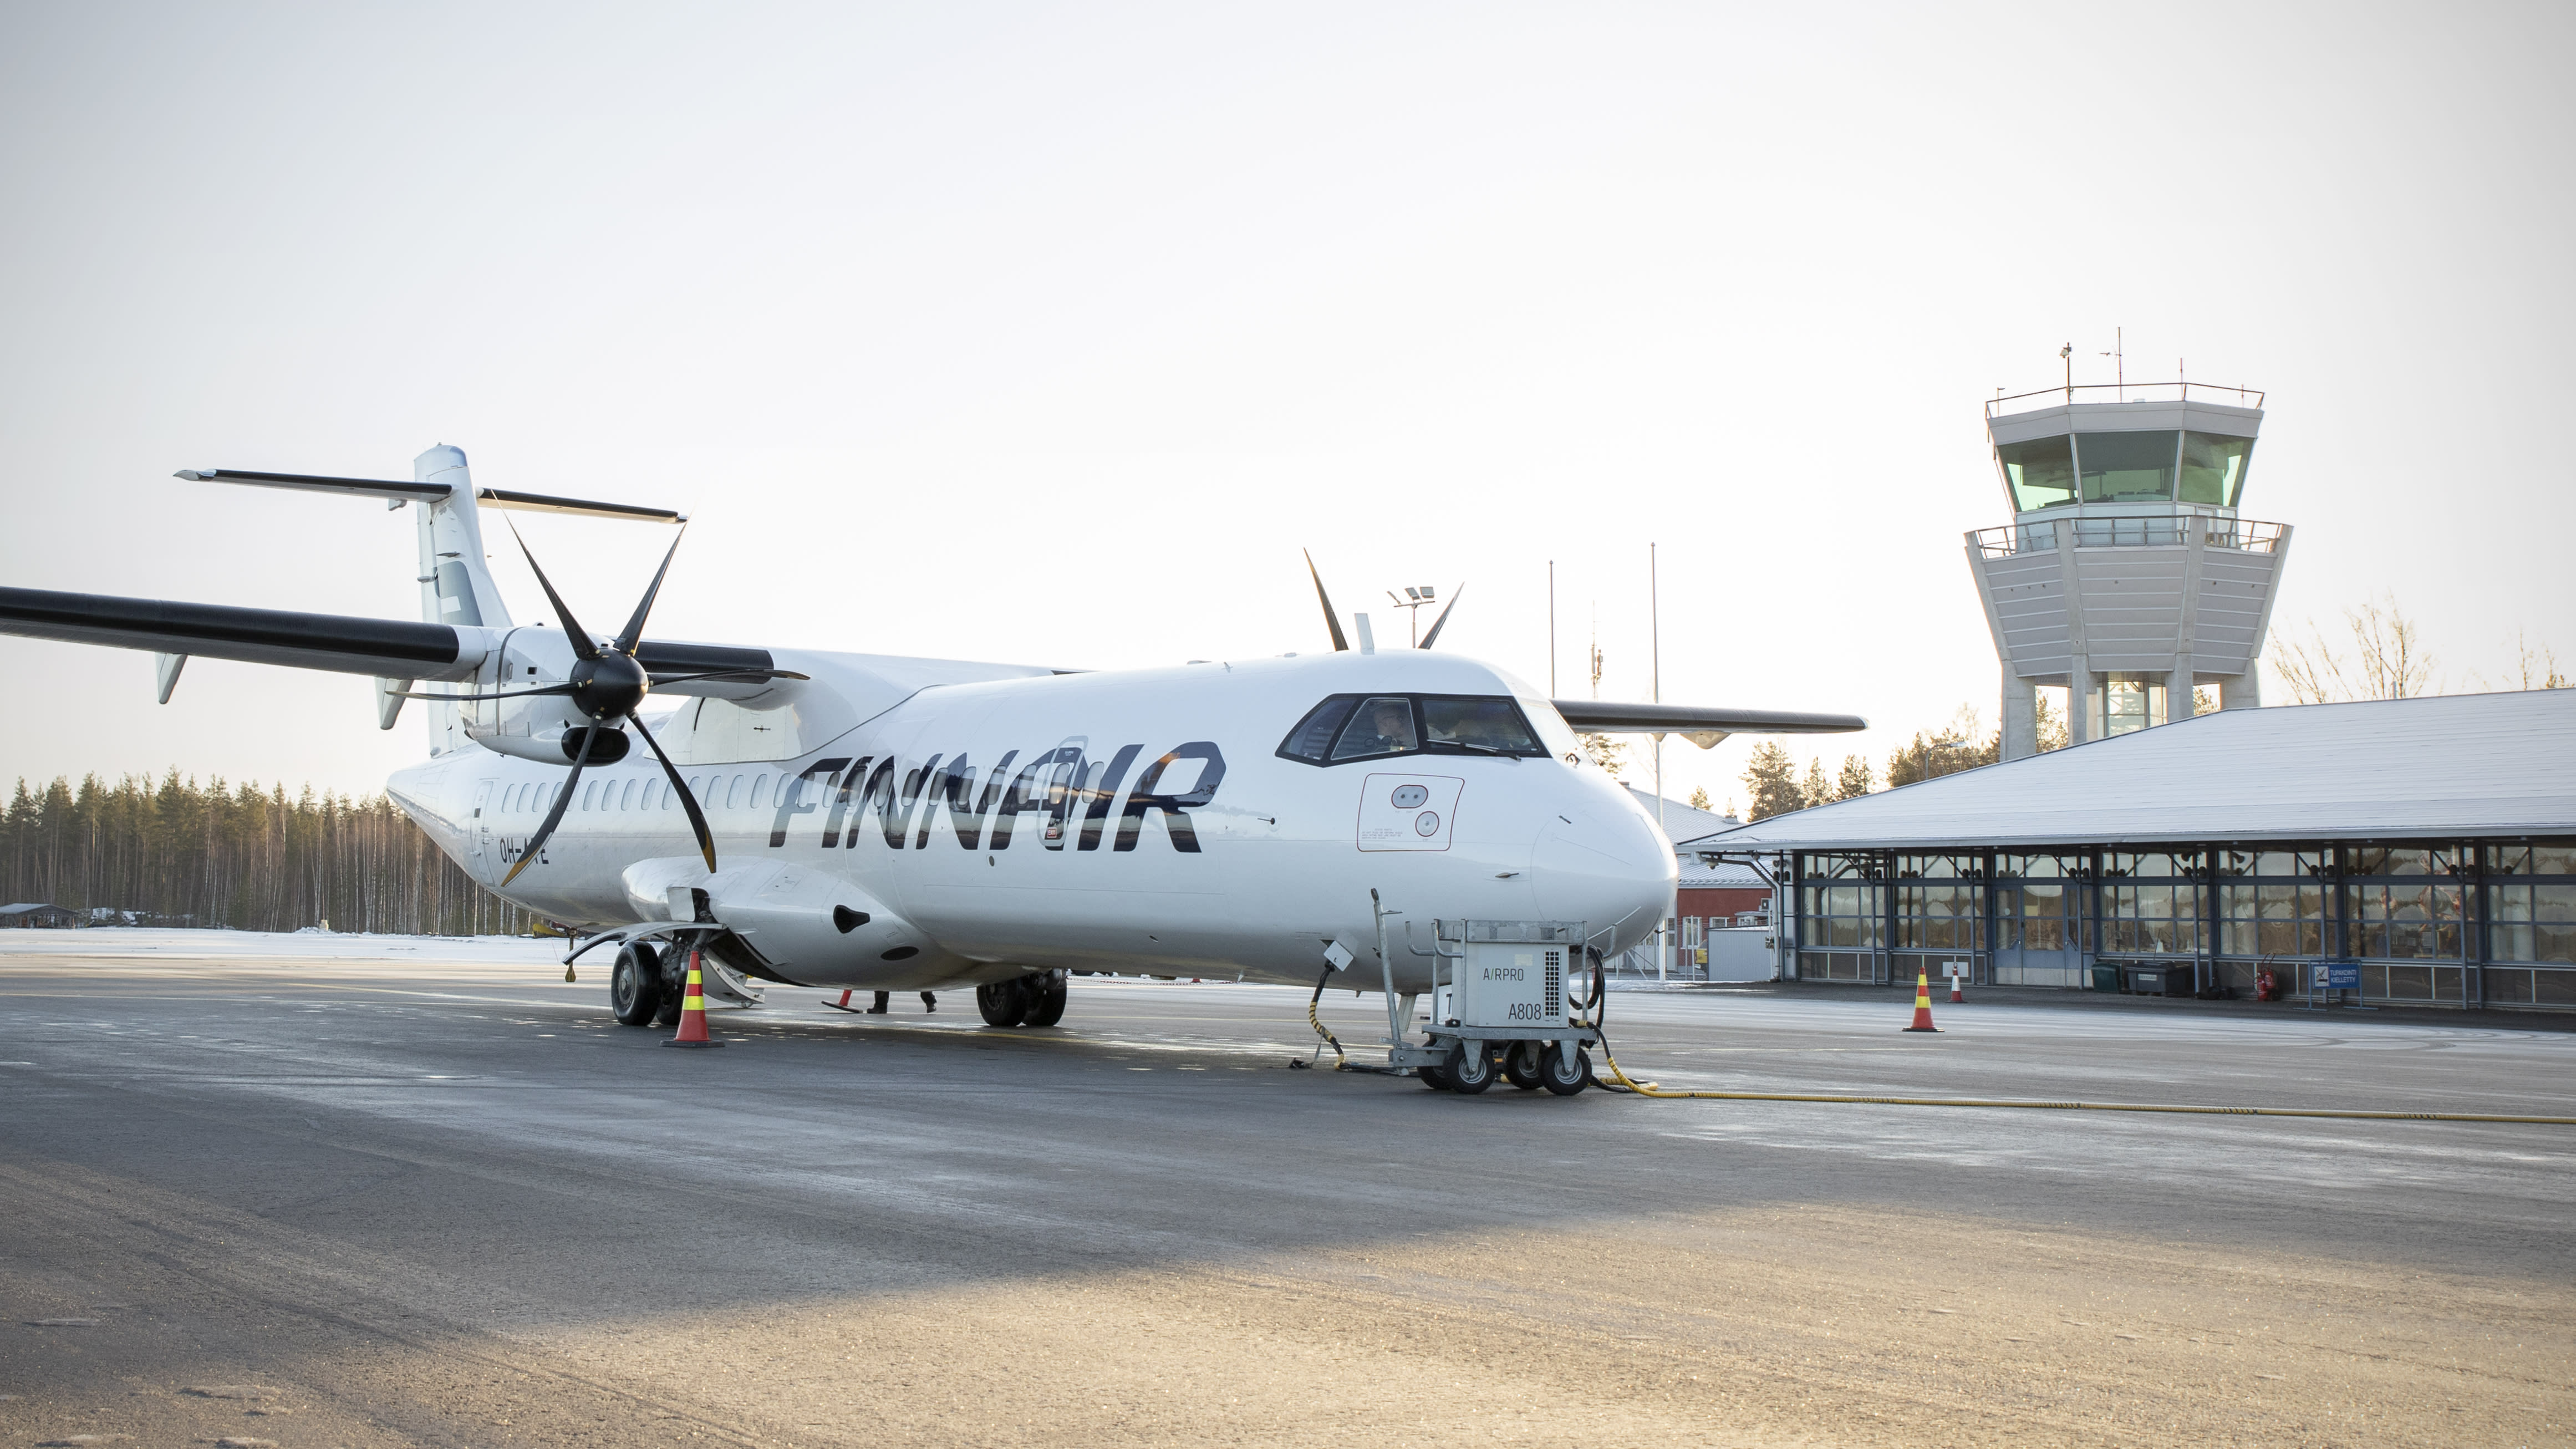 핀란드는 400km 미만의 국내선 비행을 금지해야 한다고 전문가는 말합니다.